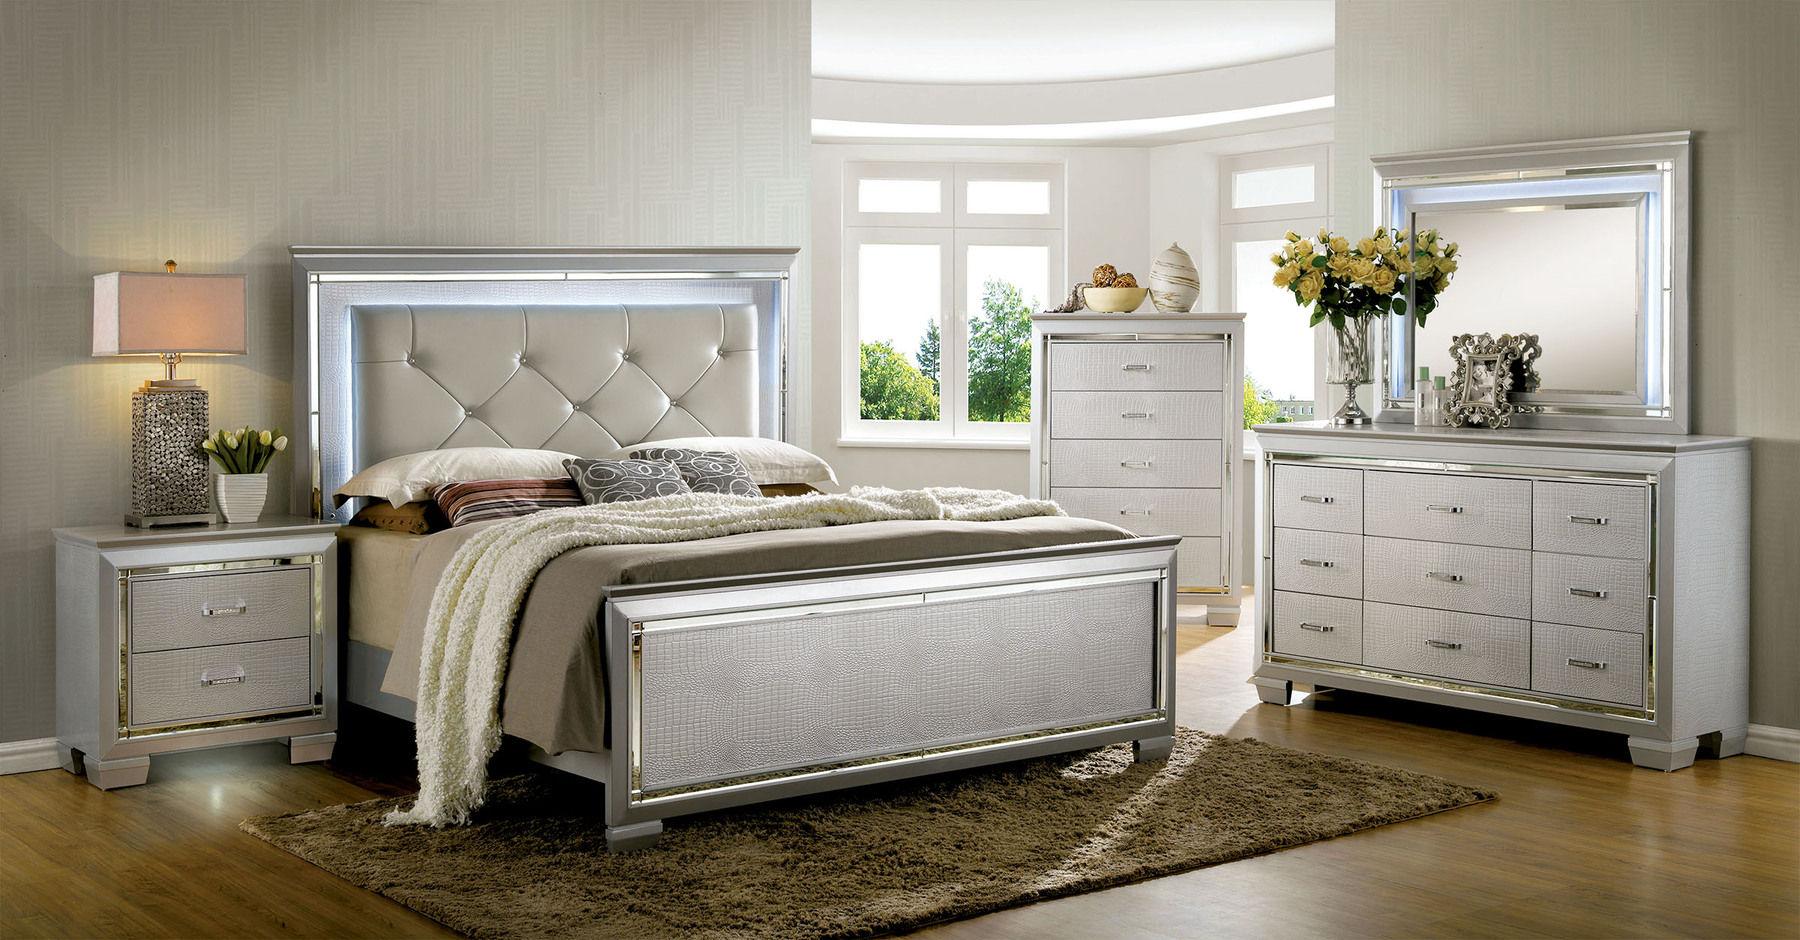 

    
Contemporary Silver Solid Wood Queen Bedroom Set 6pcs Furniture of America CM7979SV-Q Bellanova
